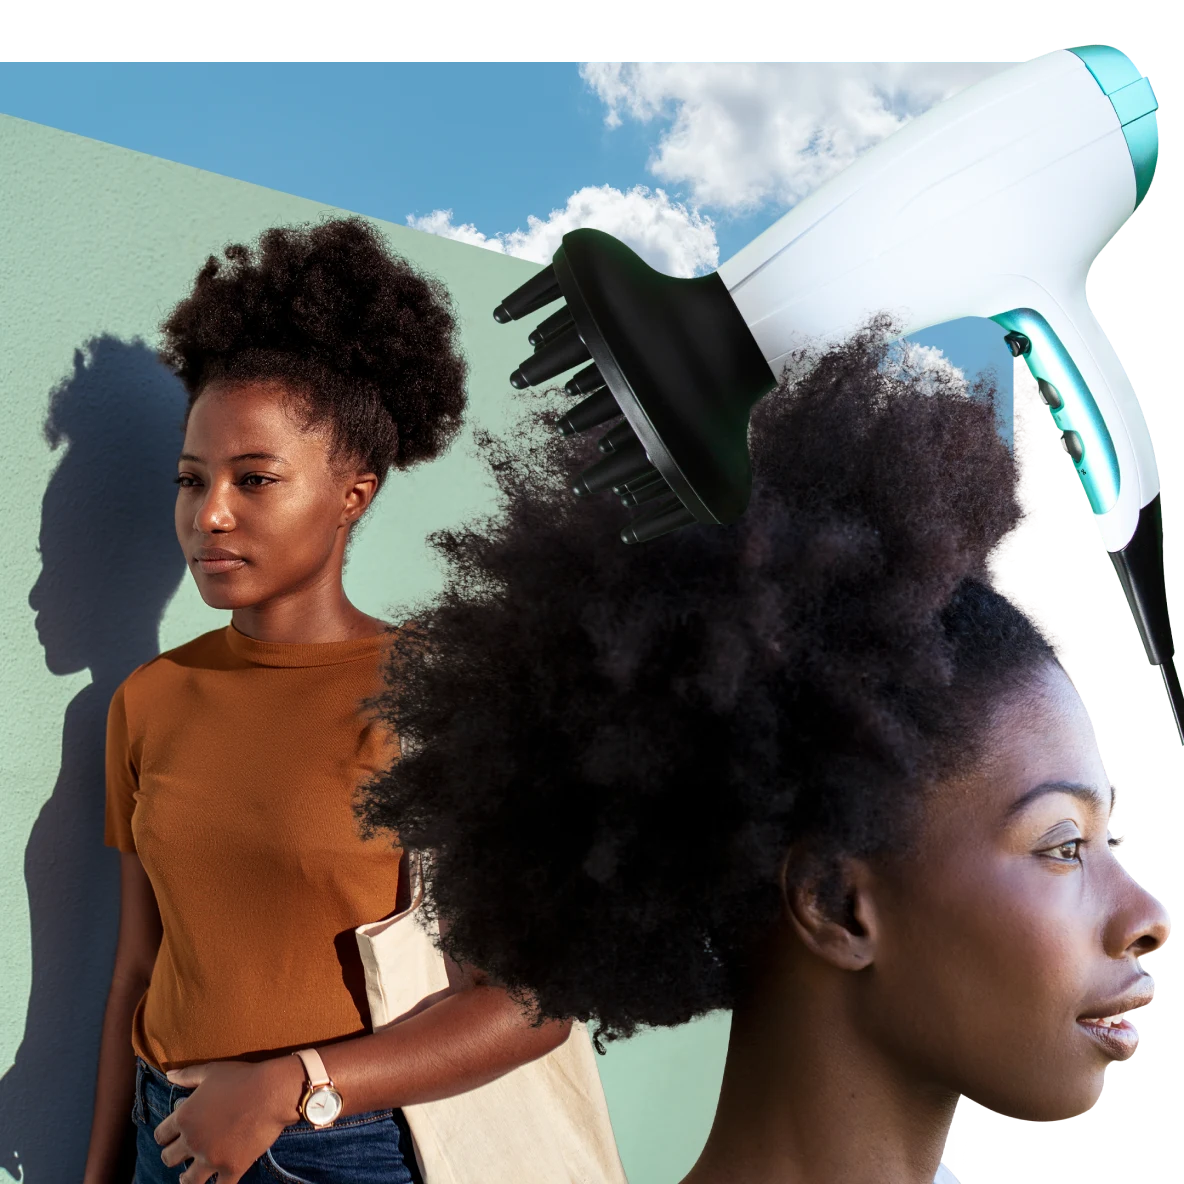 薄緑色を背にした、自然な髪質を活かしたヘアスタイルの黒人女性 2 人。左側の女性はベージュ色のトップスを着ており、右側の女性の頭上には白いヘアドライヤーが配置されている。背景には青空と雲。